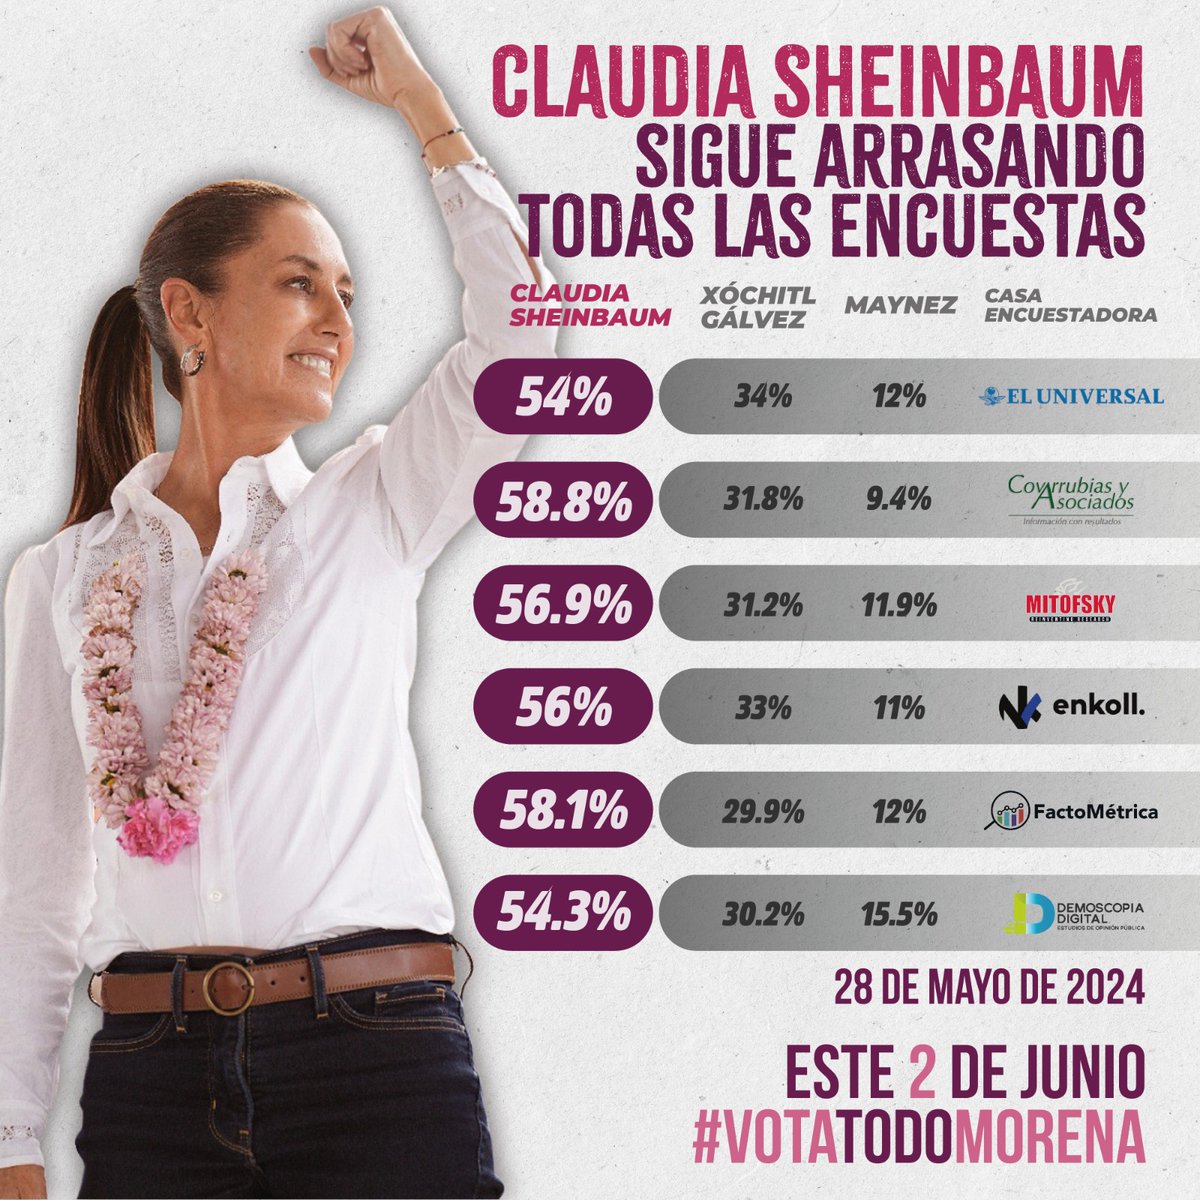 Así vamos a cerrar esta campaña, como nunca en la historia una mujer alcanza niveles de popularidad tan altos, es un timbre de orgullo ser parte de este momento histórico para el país
#MéxicoConClaudia
#LaPrimera
#VotaTodoClaudia